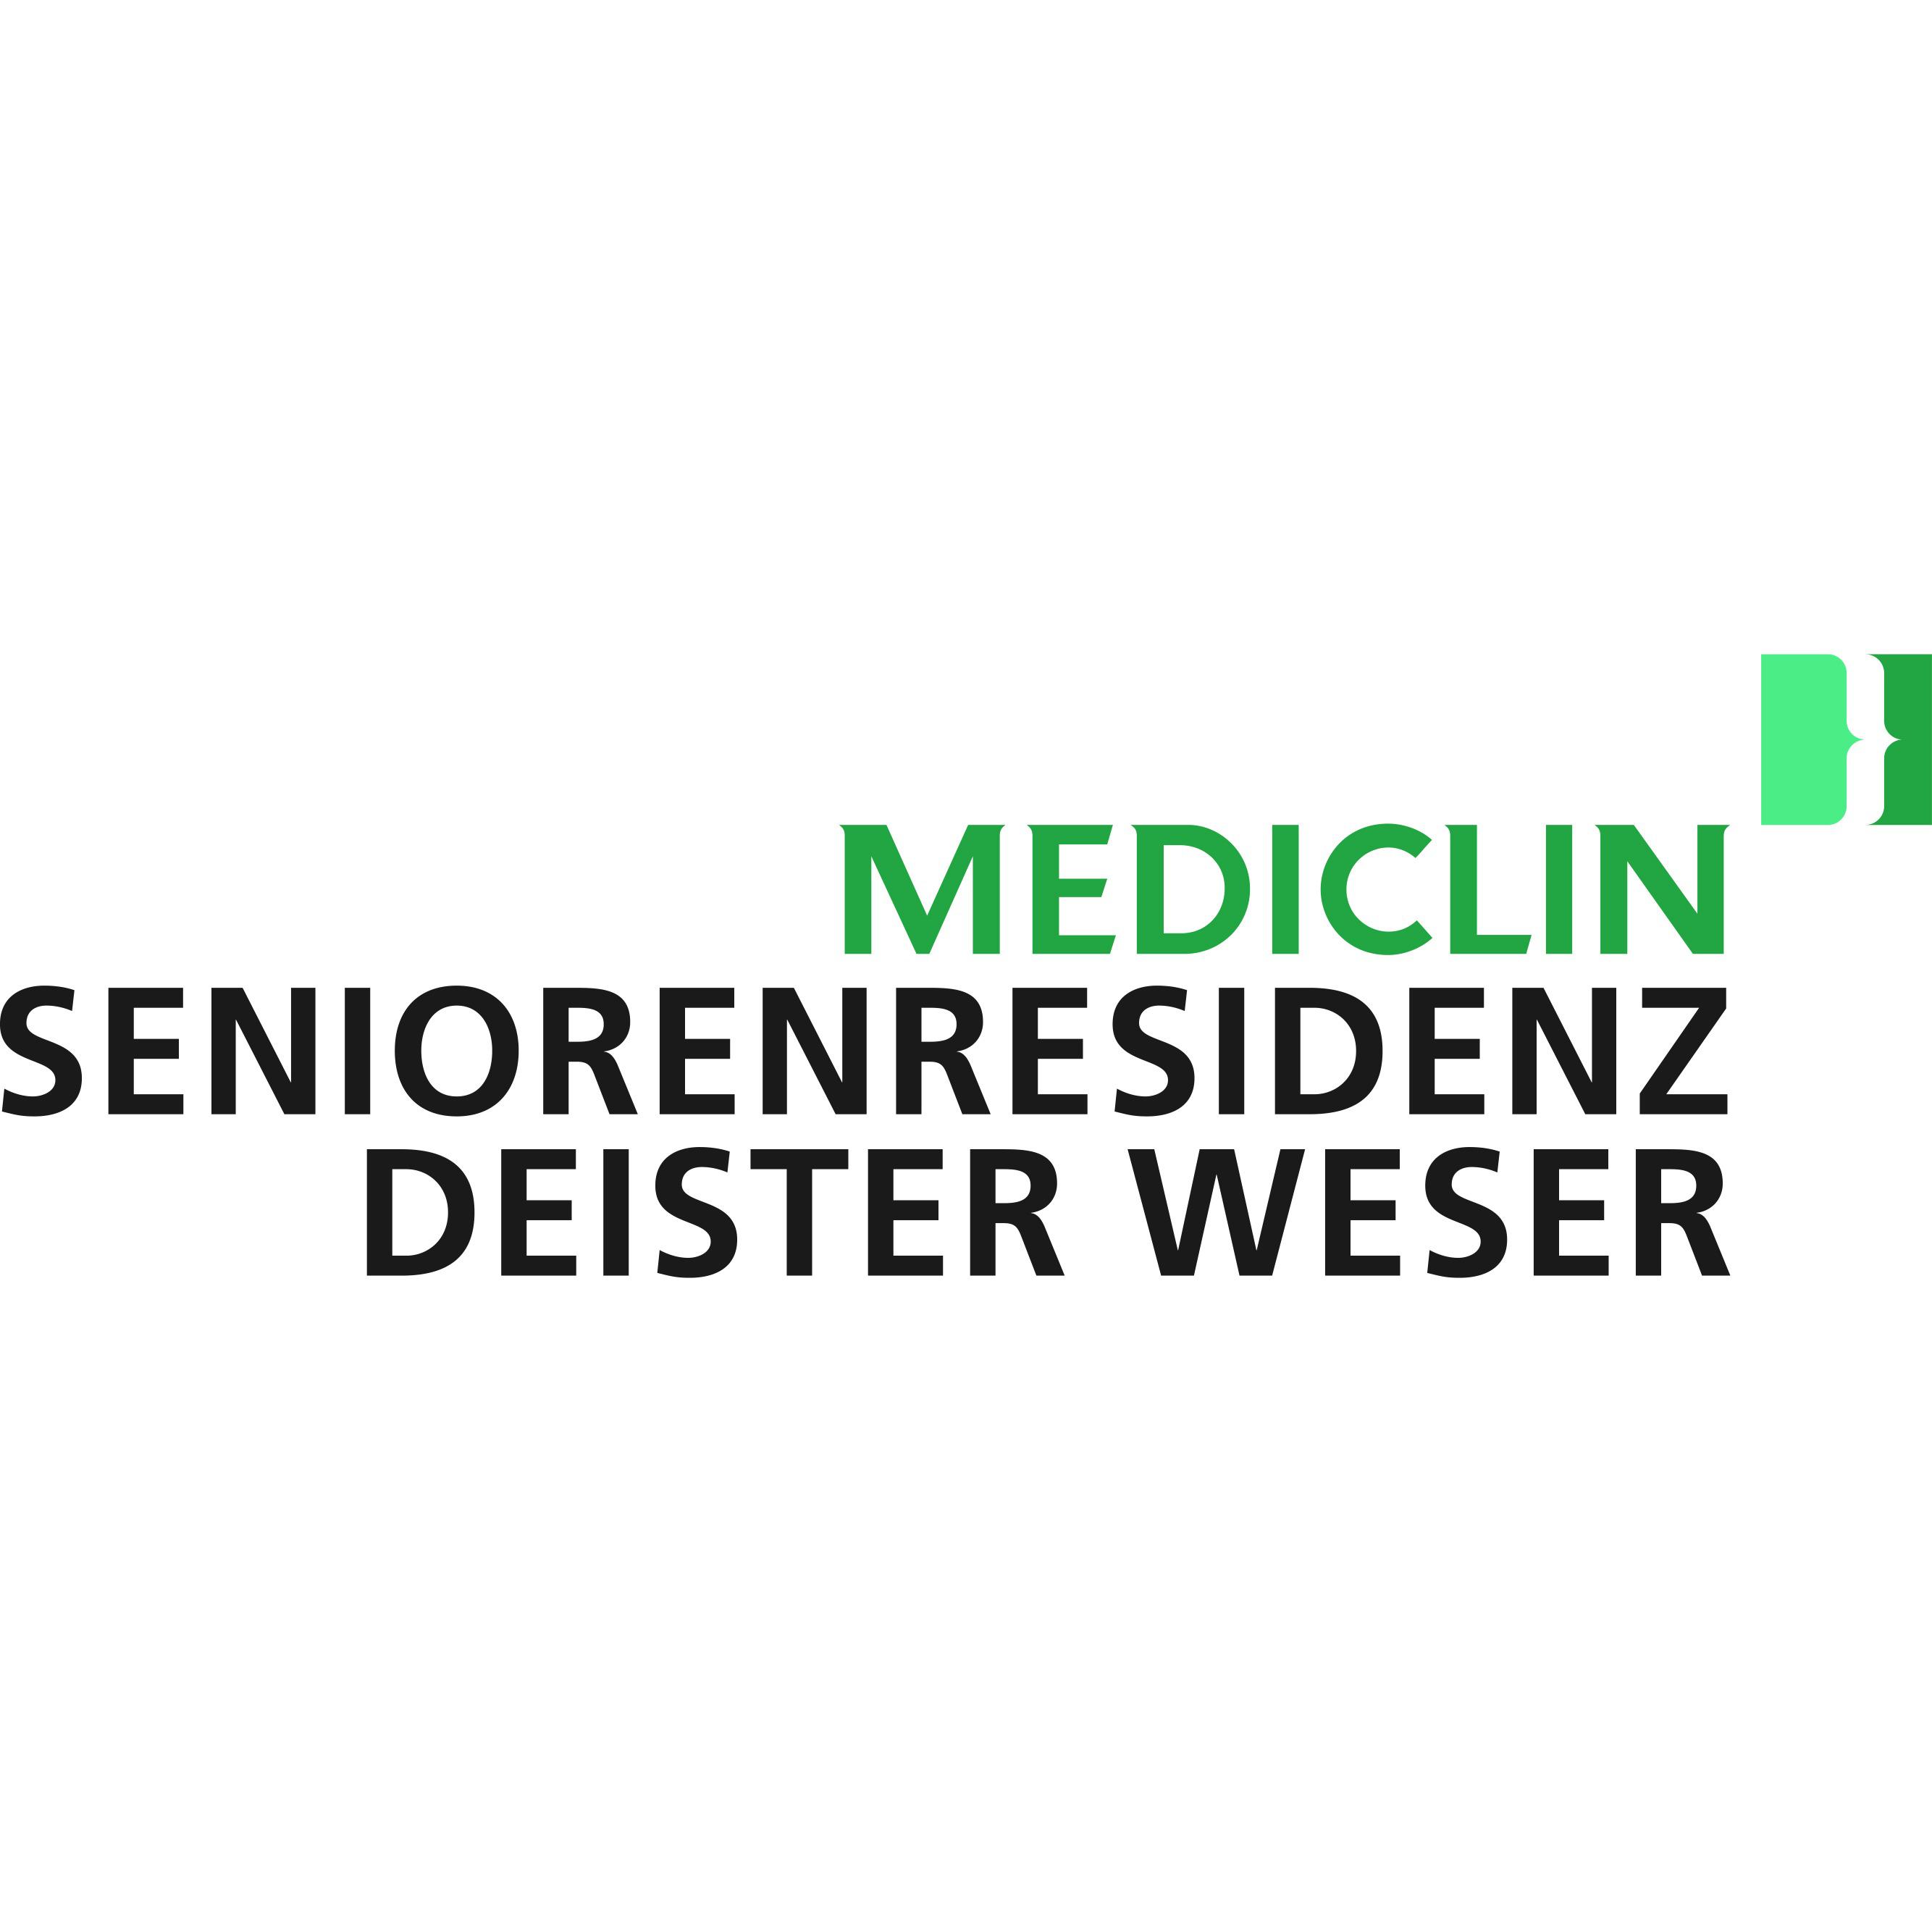 MEDICLIN Seniorenresidenz Deister Weser Logo